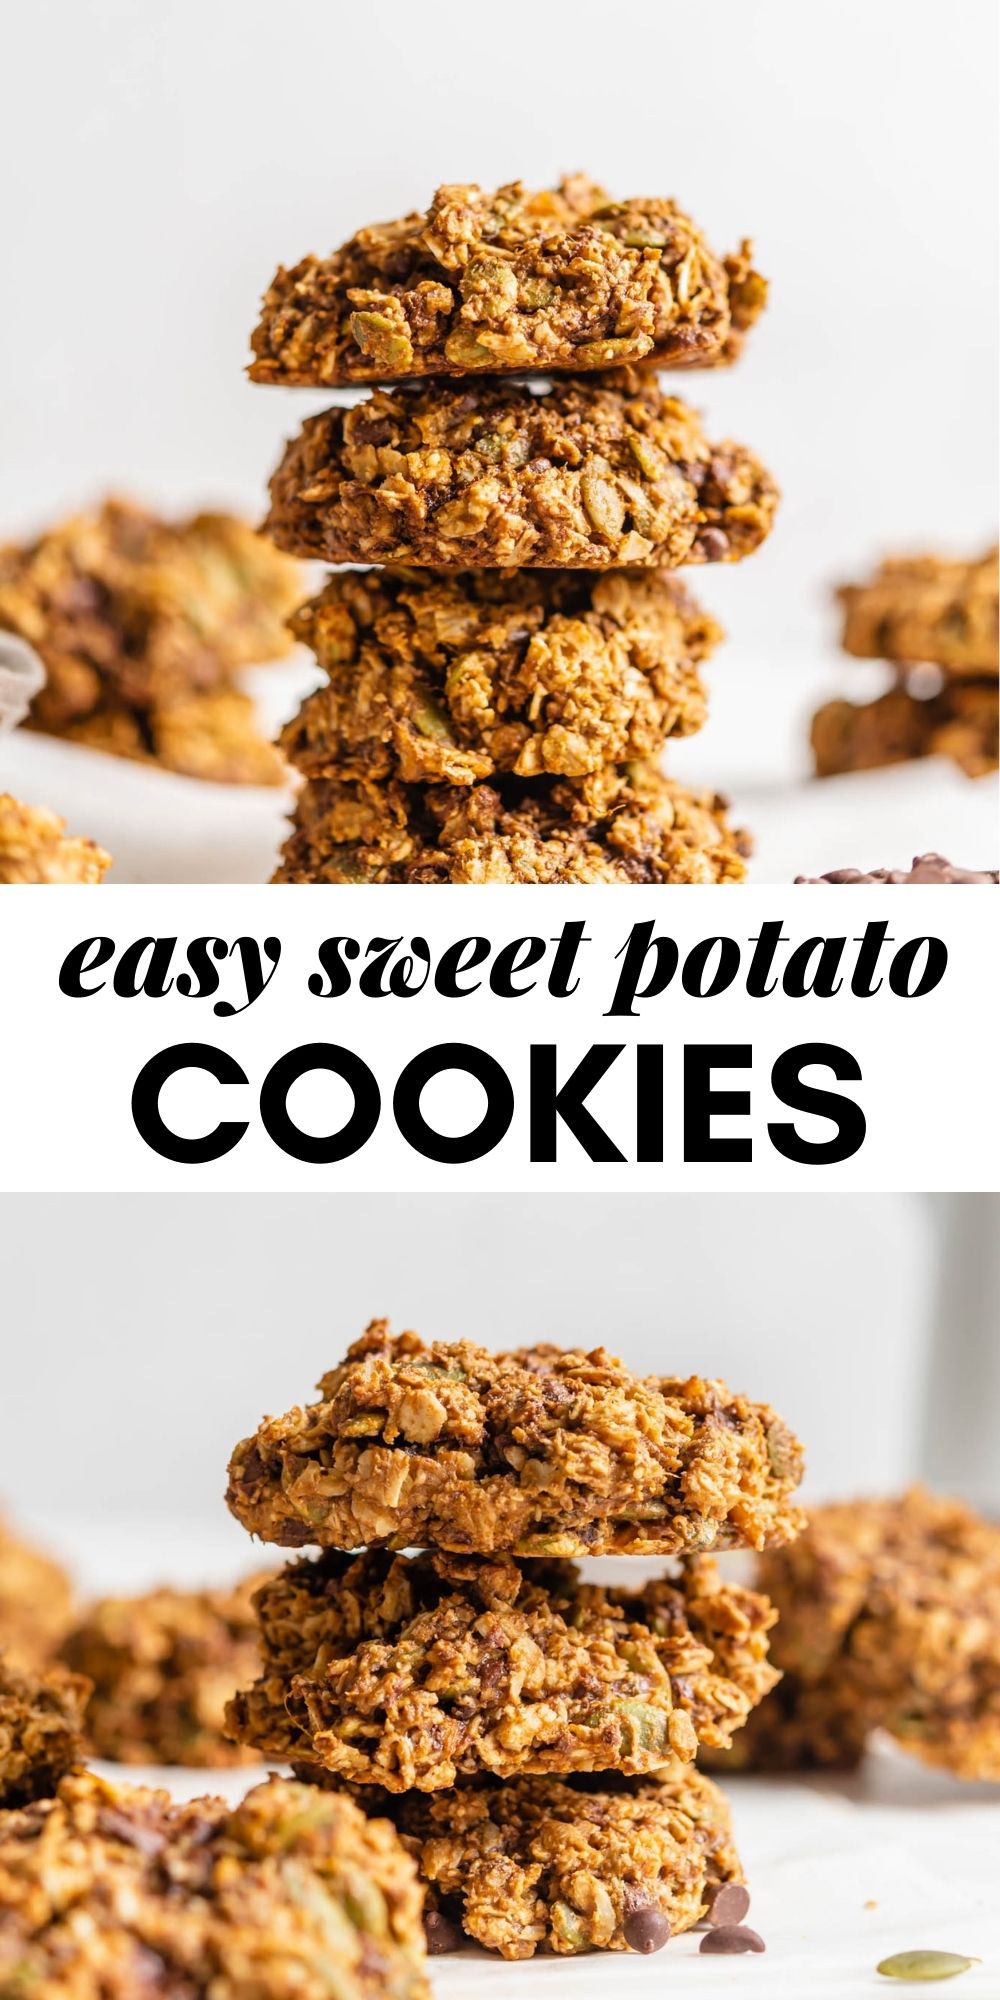 Easy & Healthy Vegan Sweet Potato Cookies Gluten-Free